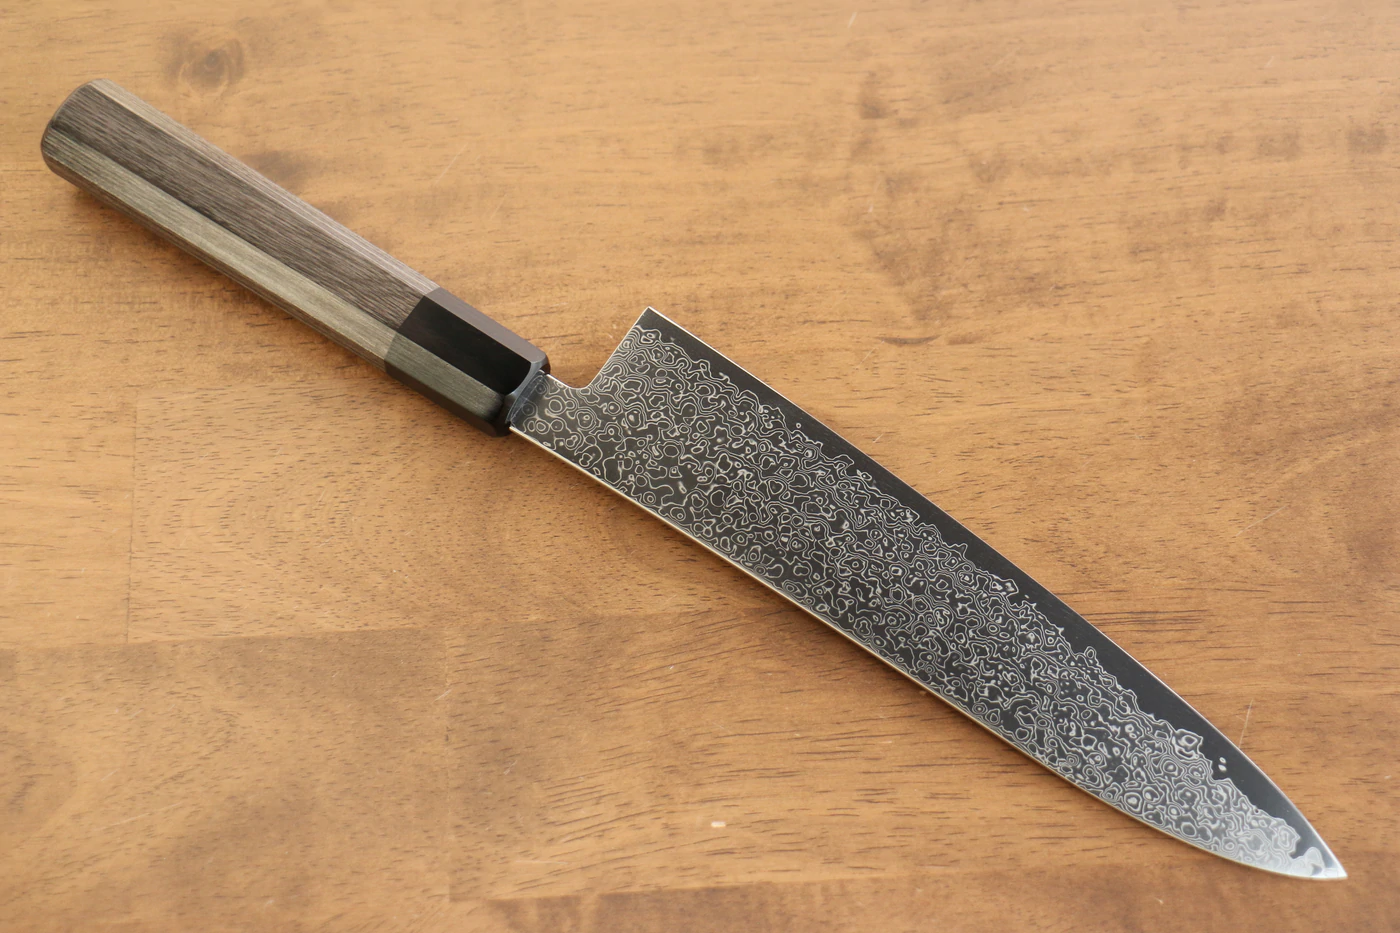 Jajin Marke VG10 Damaststahl Mehrzweckmesser Gyuto Japanisches Messer 210 mm grauer Pakkaholzgriff 